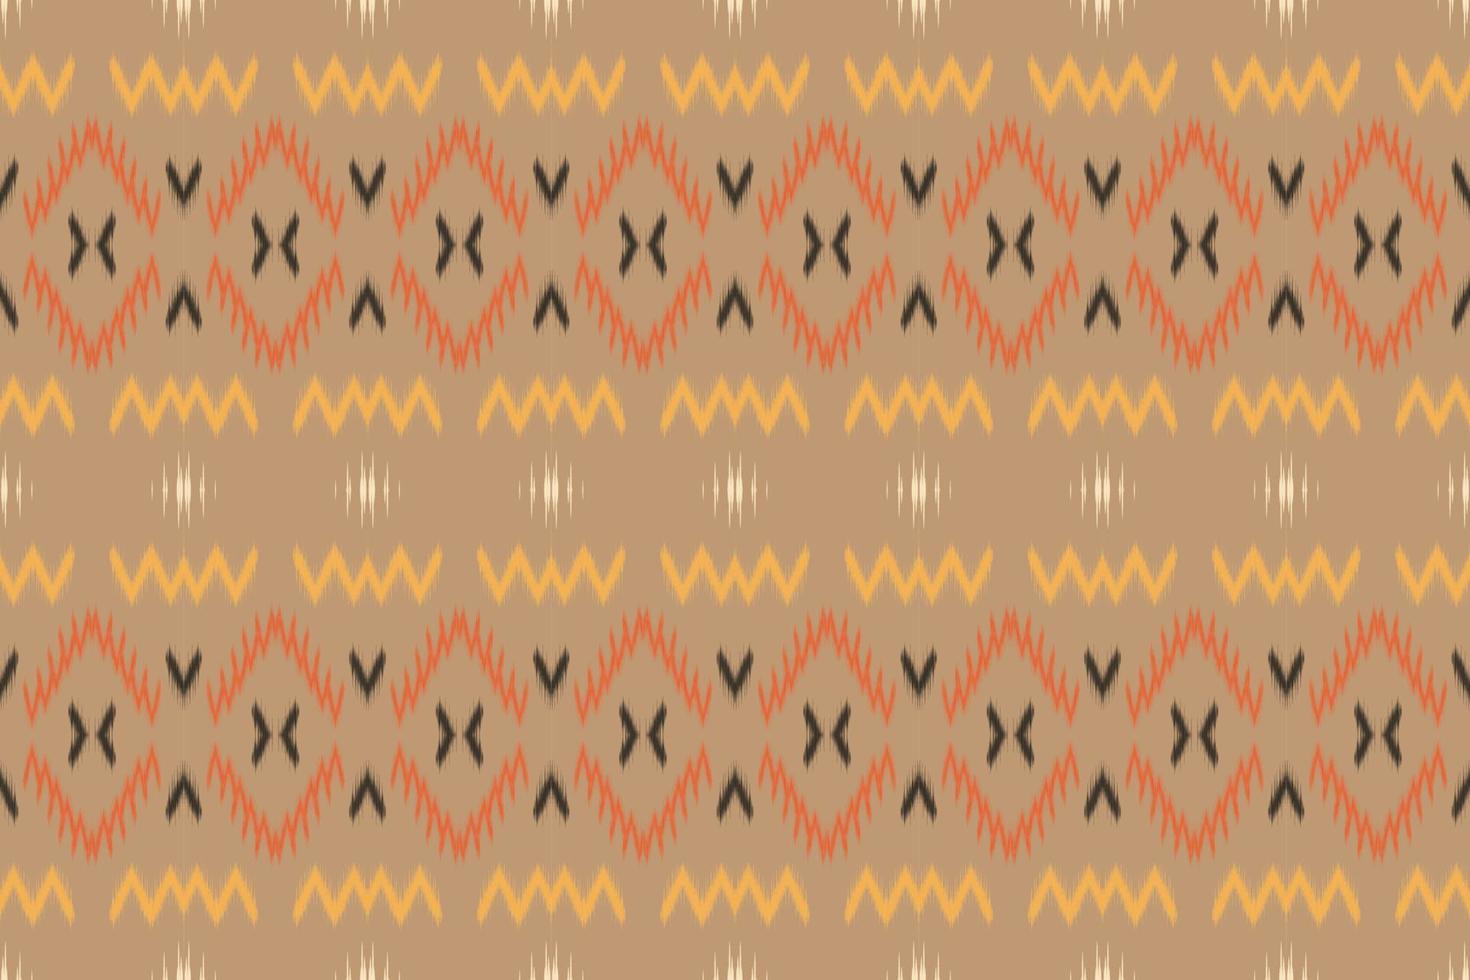 Motif ikat chevron tribal backgrounds Borneo Scandinavian Batik bohemian texture digital vector design for Print saree kurti Fabric brush symbols swatches